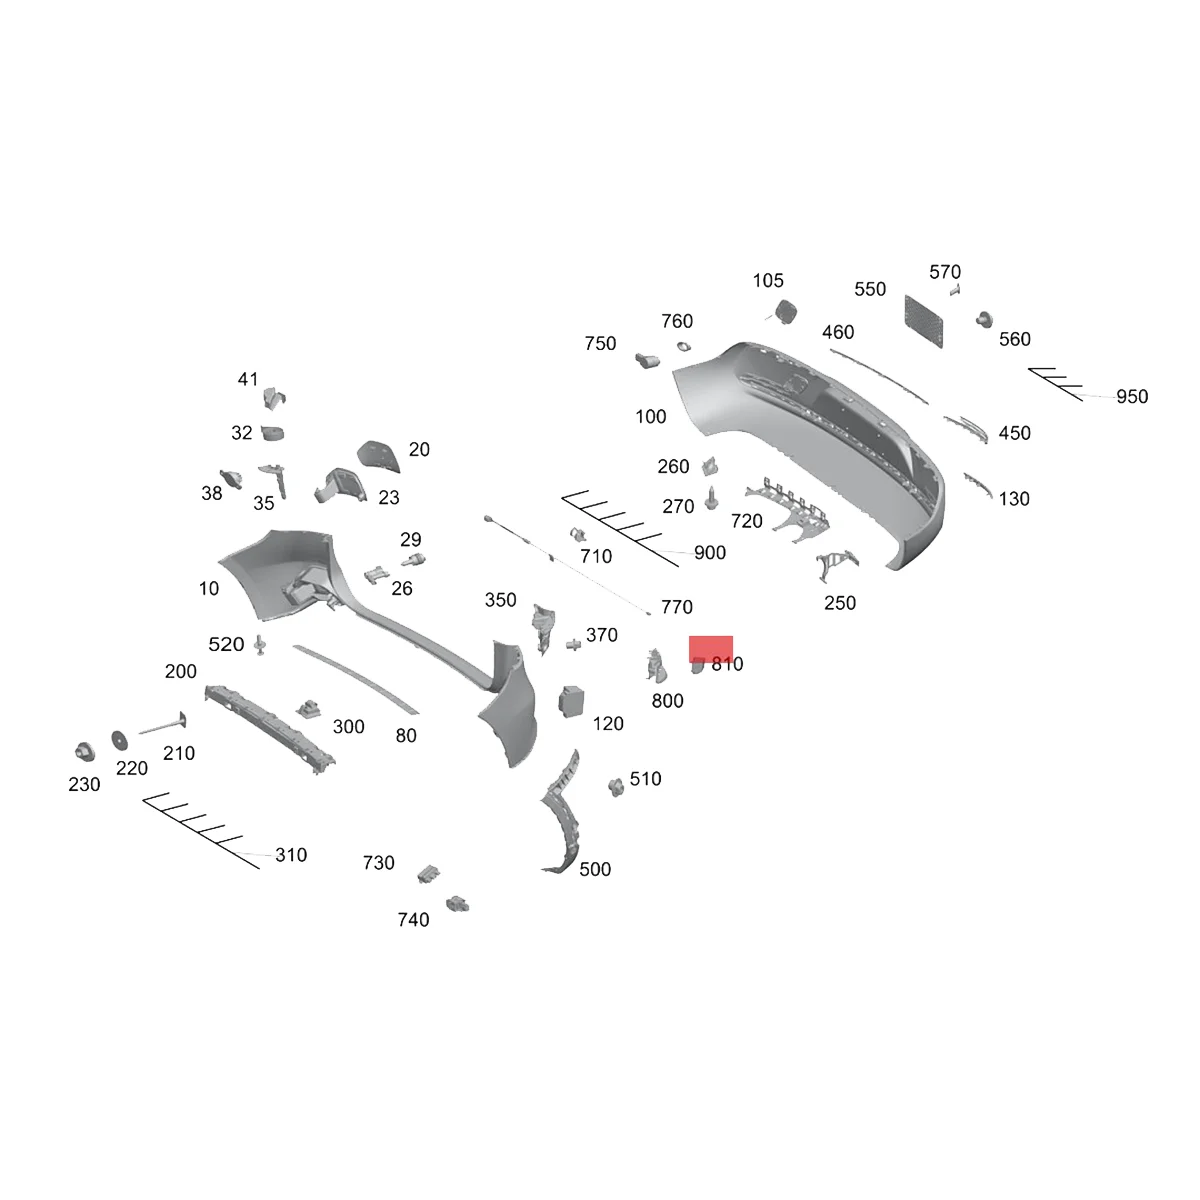 A0009054111 Spate Blind Spot Asist Senzor Radar la Stânga sau la Dreapta pentru Mercedes-Benz W177 W247 X 156 W205 W238 W213 W253 - 5